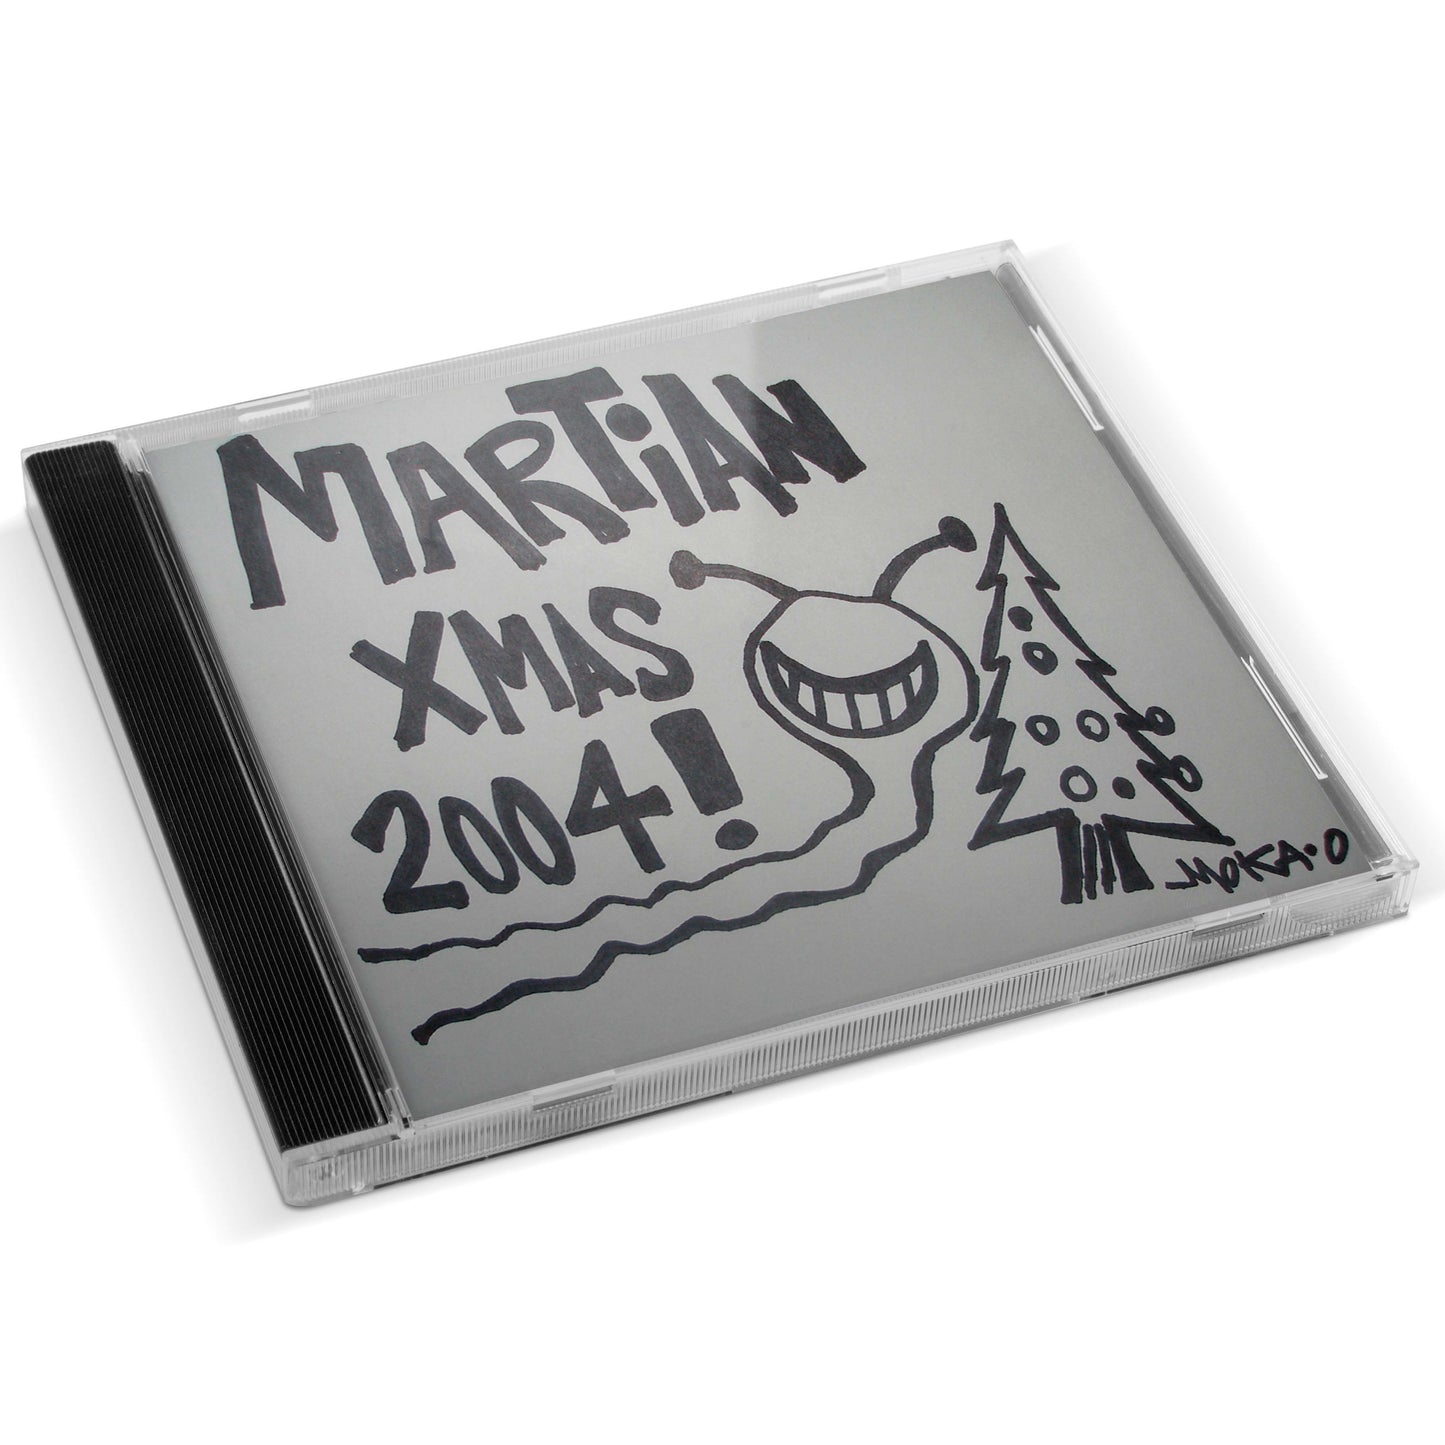 Moka Only - Martian Xmas 2004 CD